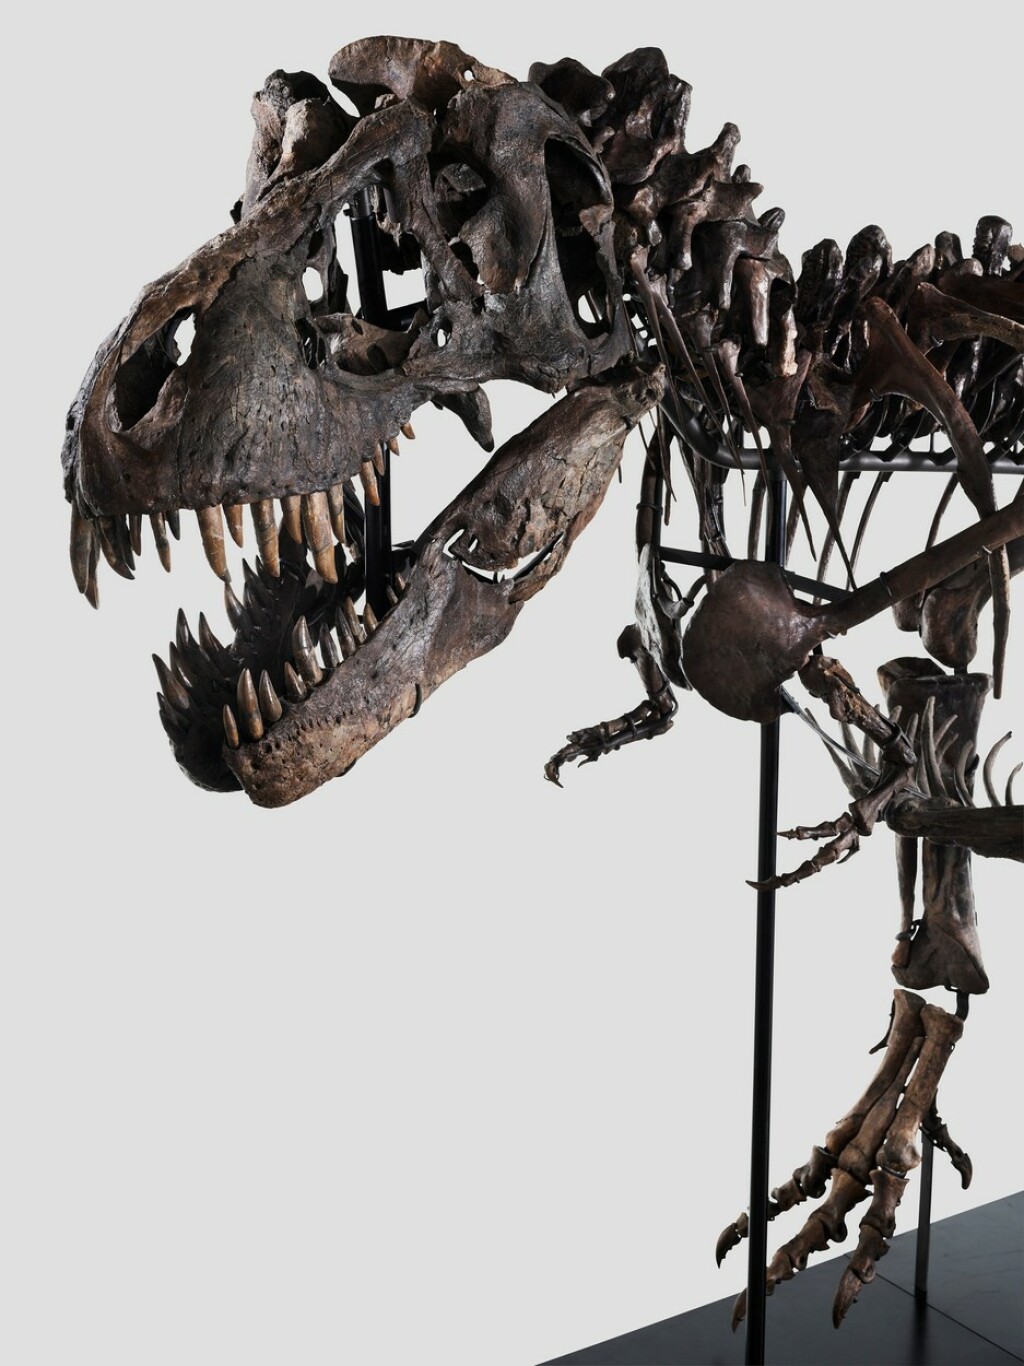 Glava tiranosaura znala je biti duga oko 1,5 metara